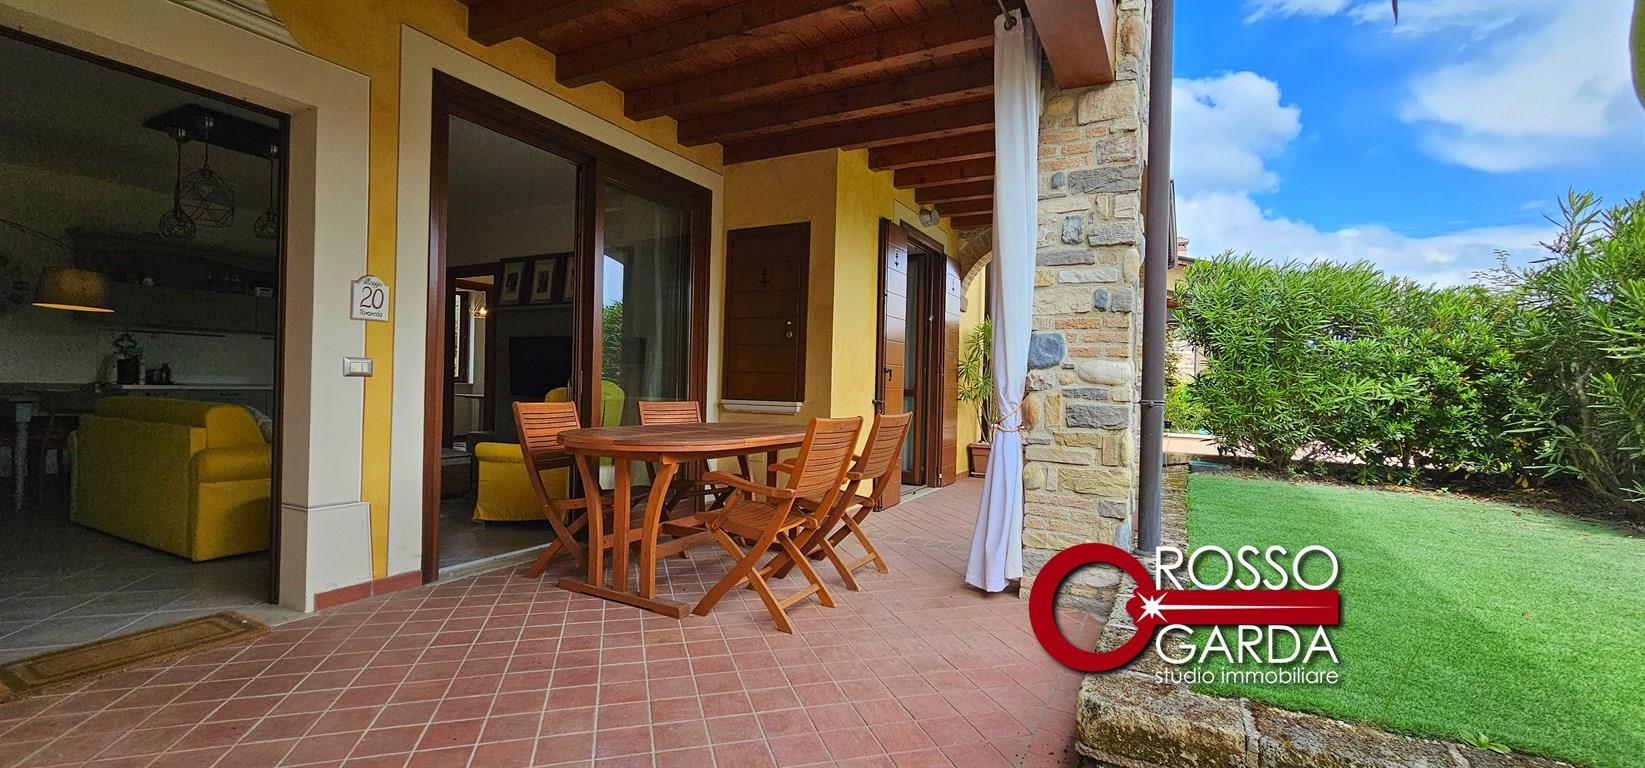 Appartamento piano terra con giardino e portico in Signorile Residence stile Sardegna in vendita a  Polpenazze del Garda